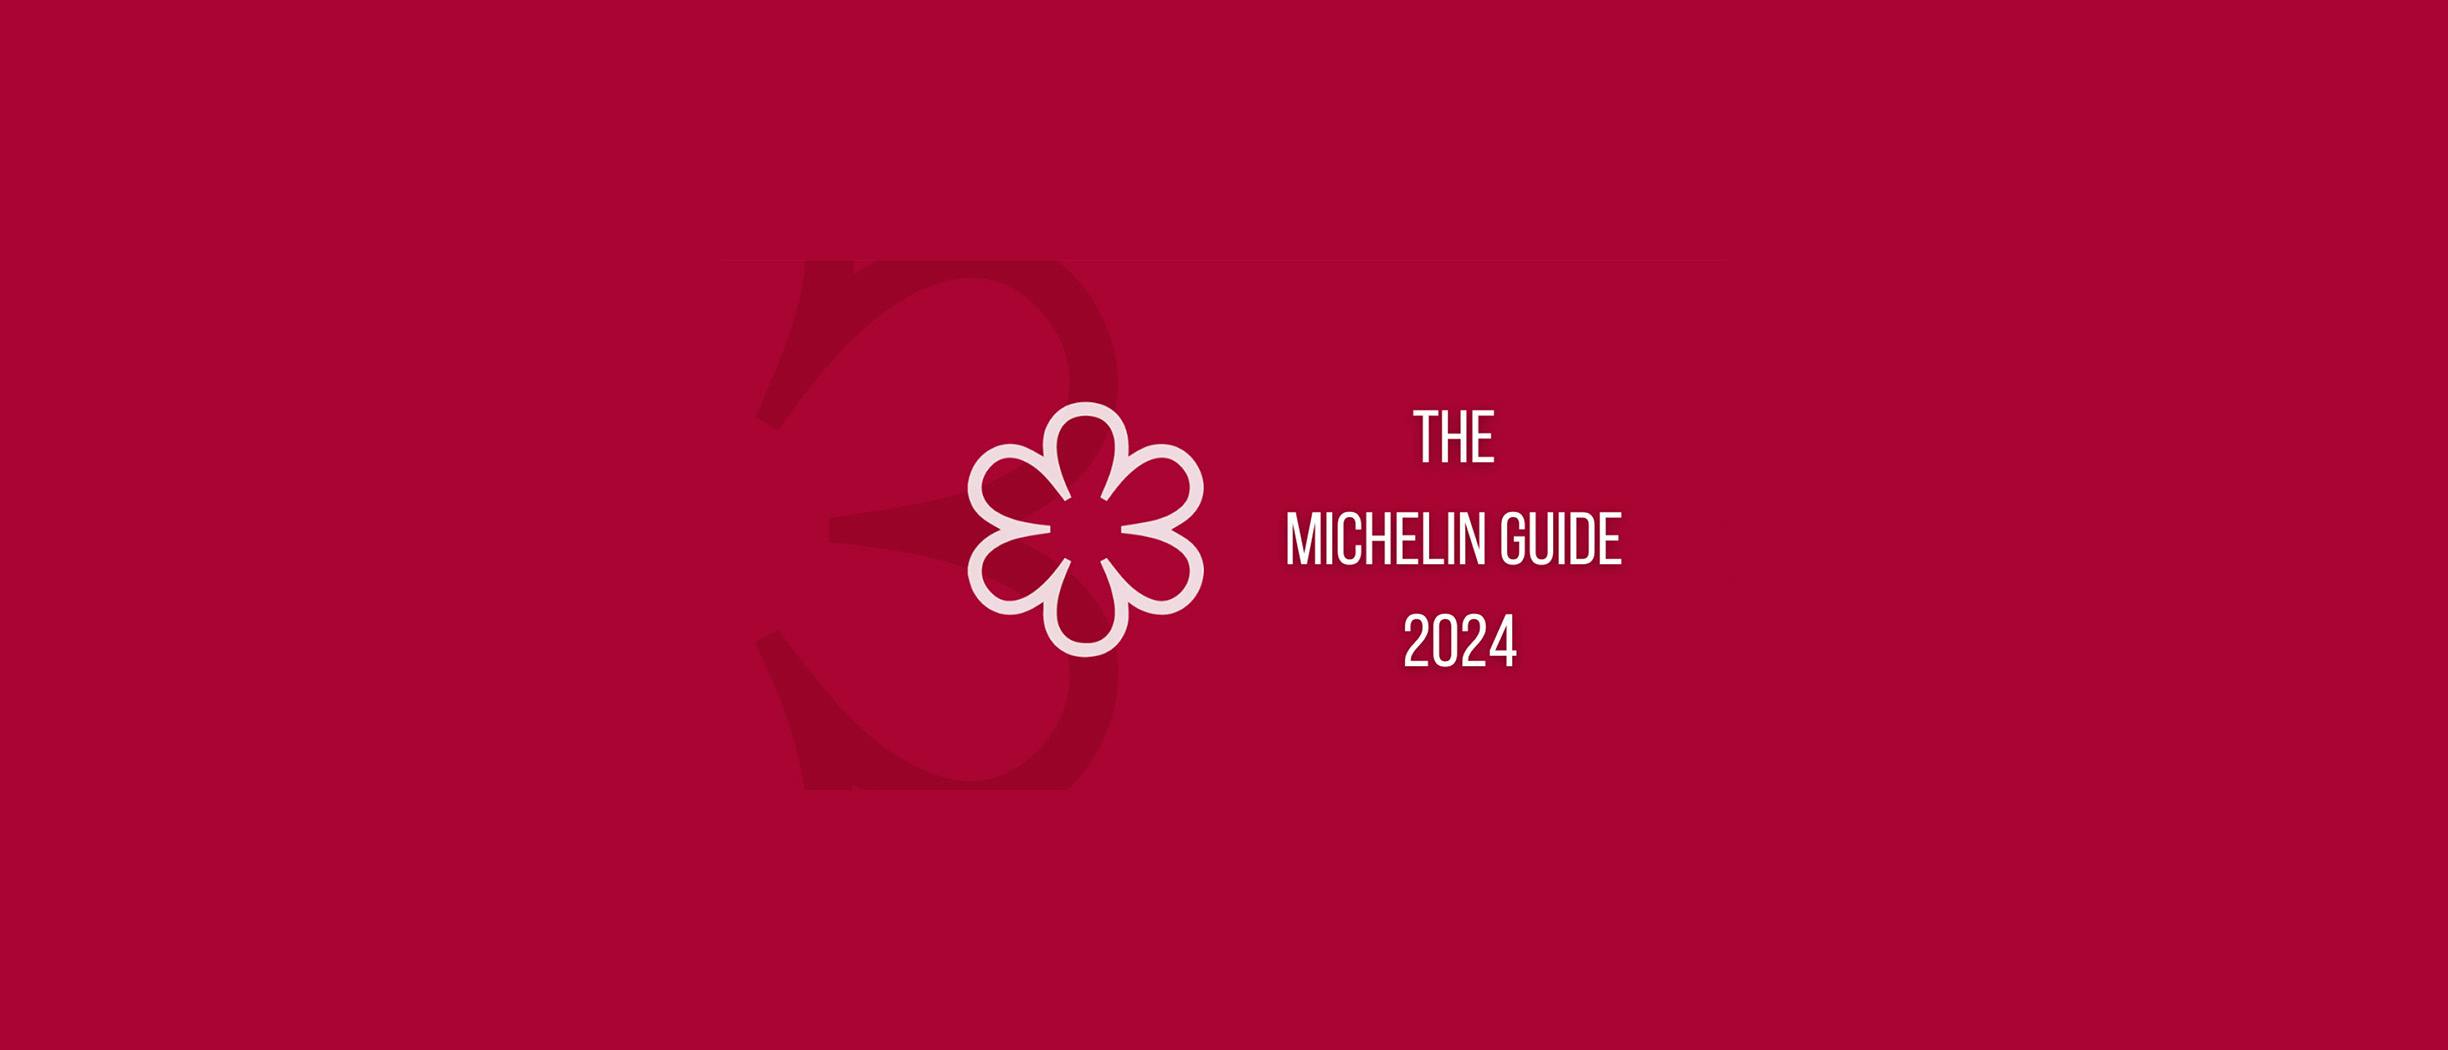 Michelin Guide 2024 награда